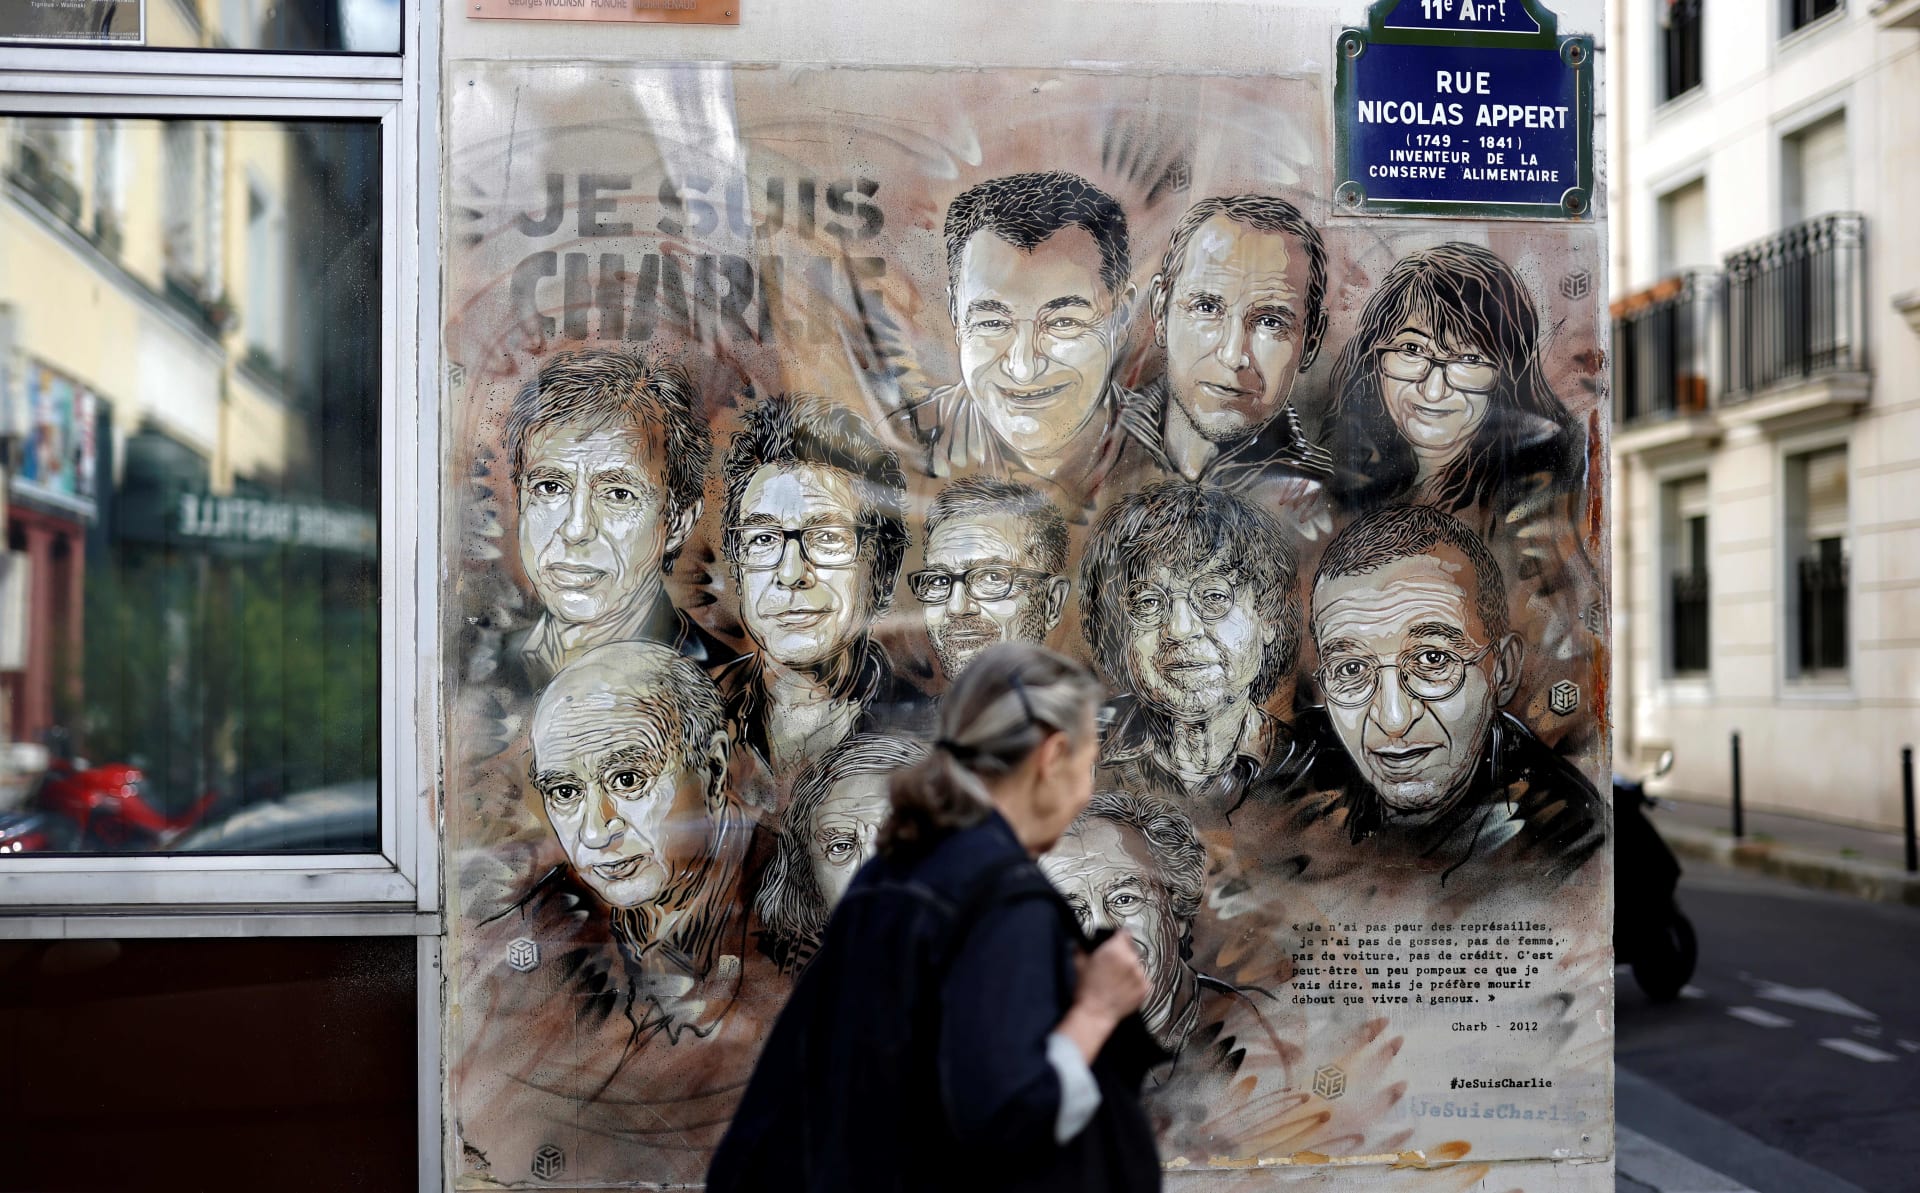 سيدة تمر بجوار لافتة تحيي ذكرى الضحايا في الهجوم على مقر صحيفة شارلي إبدو الفرنسية في 2015